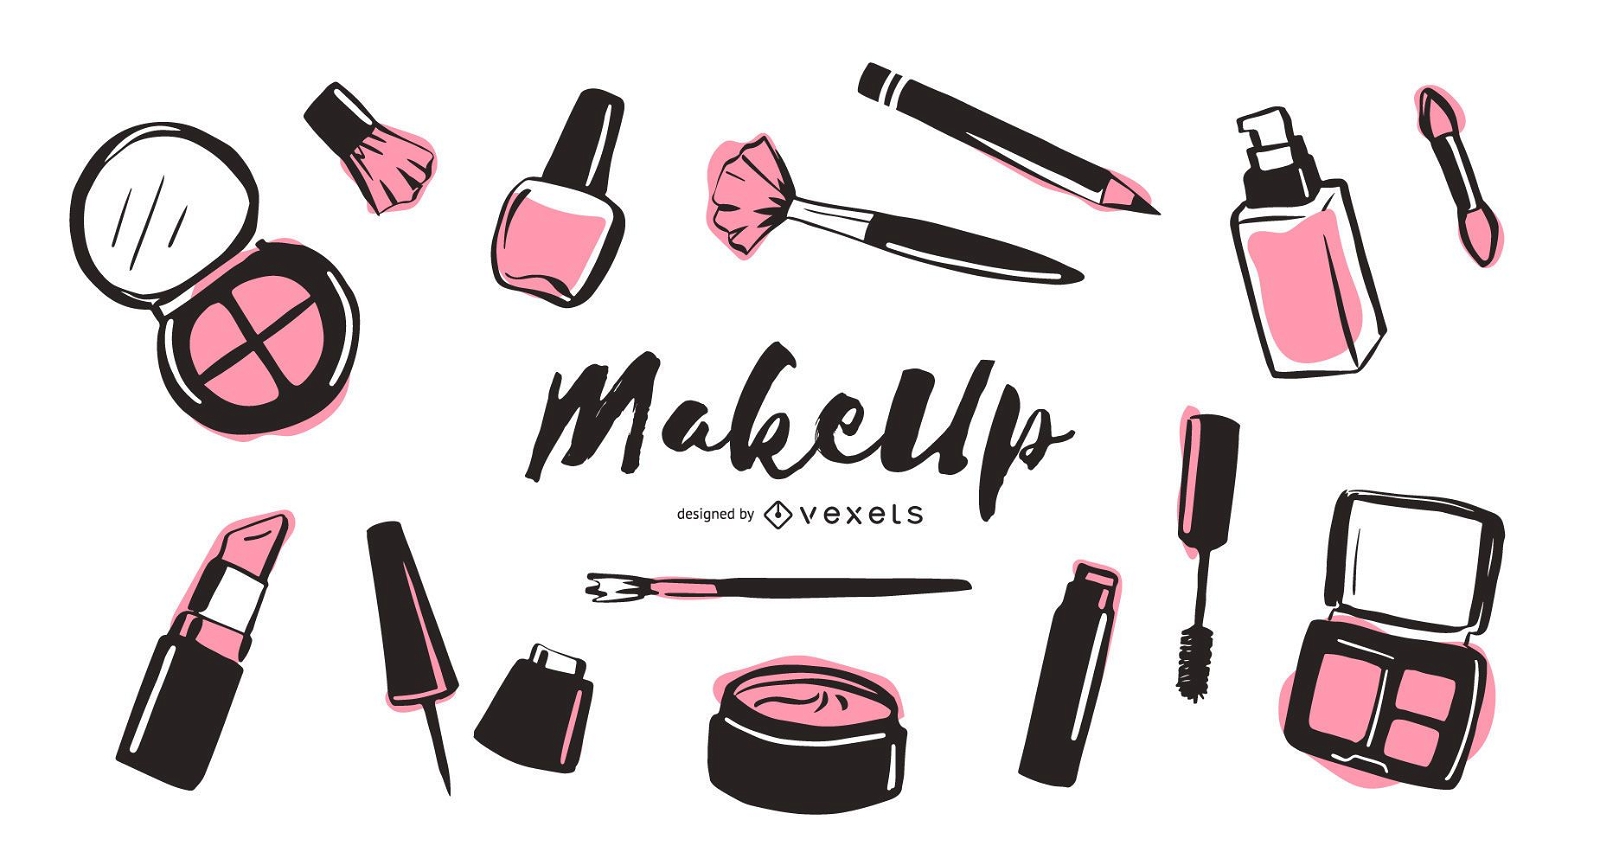 Makeup elements illustration pack